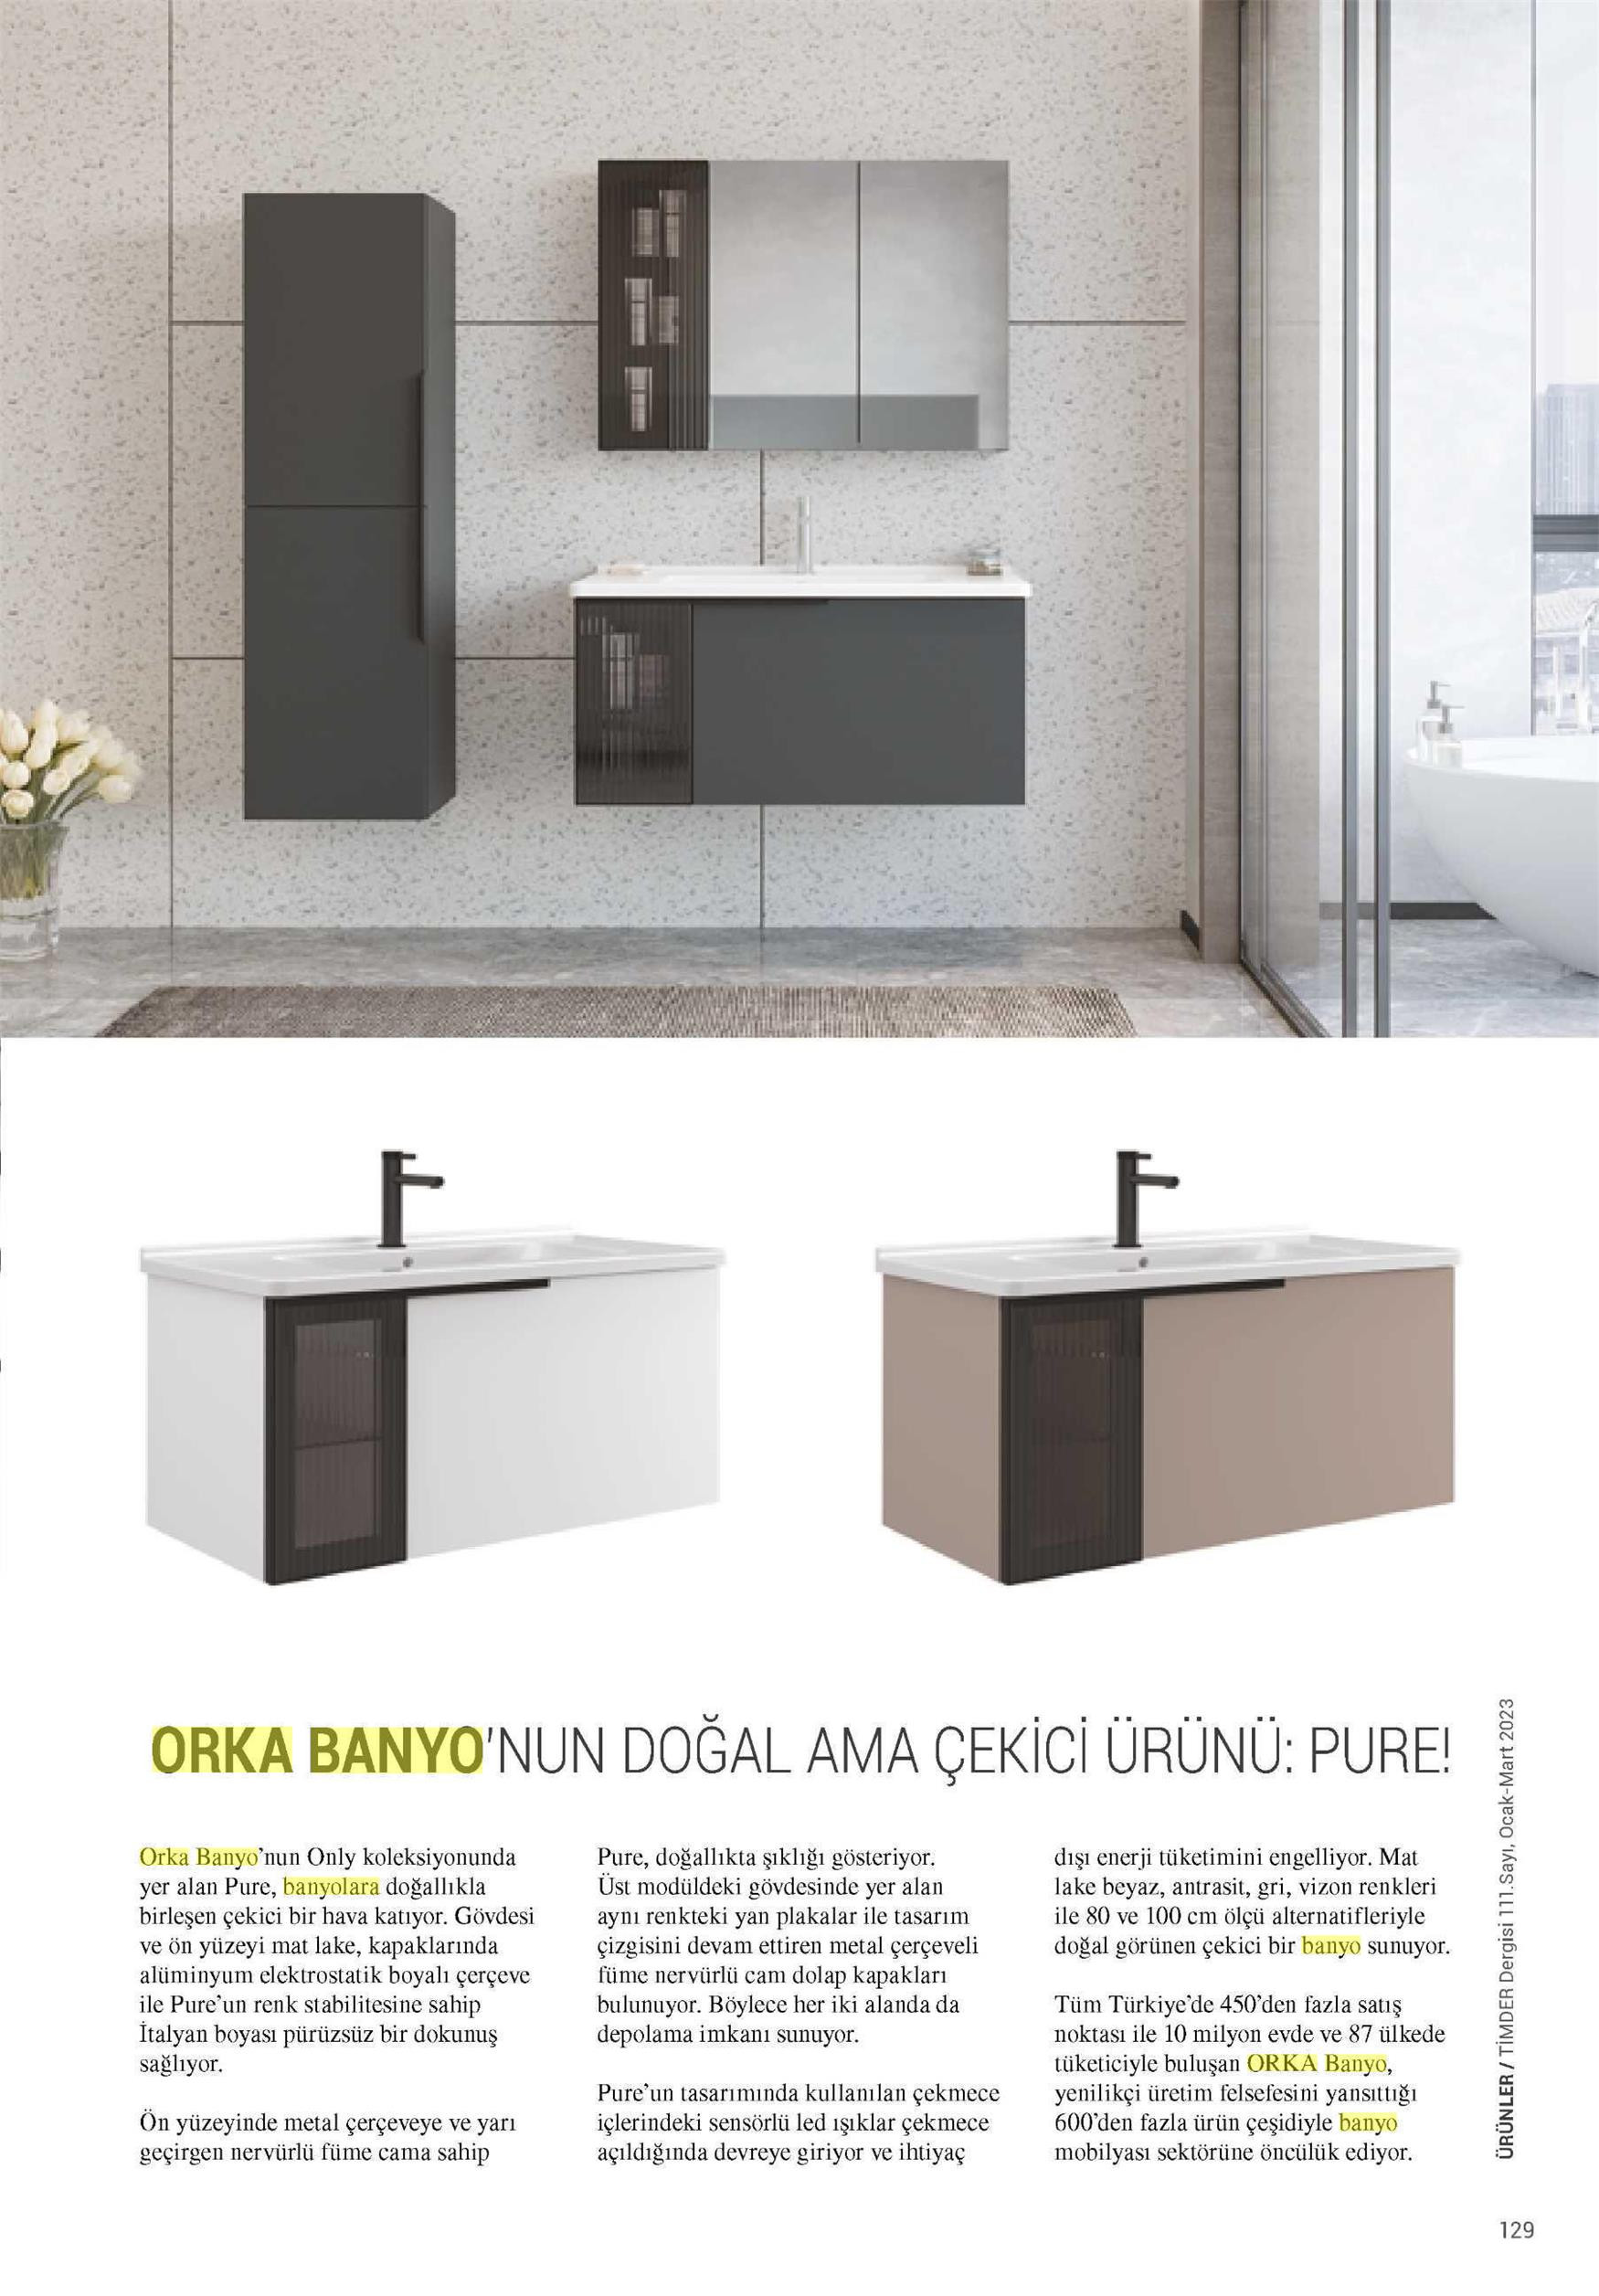 Натуральный, но привлекательный продукт от ORKA Bathroom: PURE!